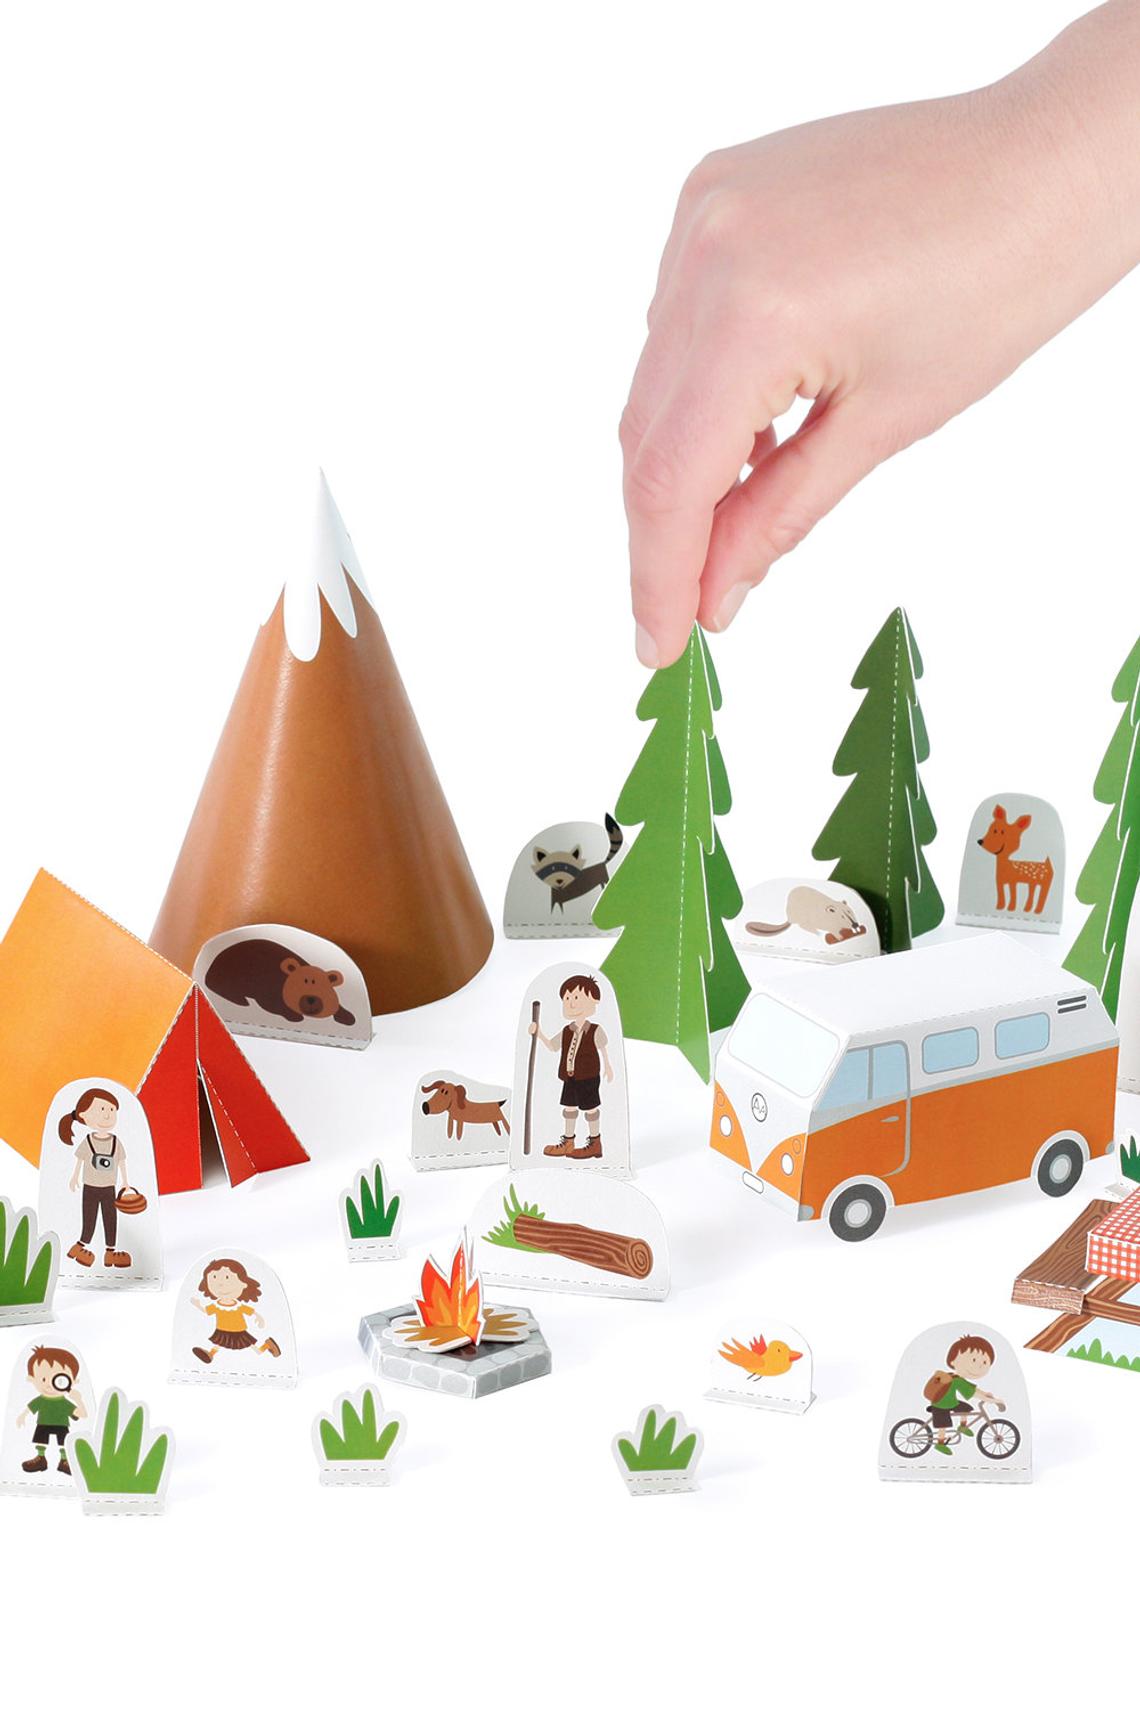 Επιτραπέζιο Παιχνίδι - Camping Paper Toy